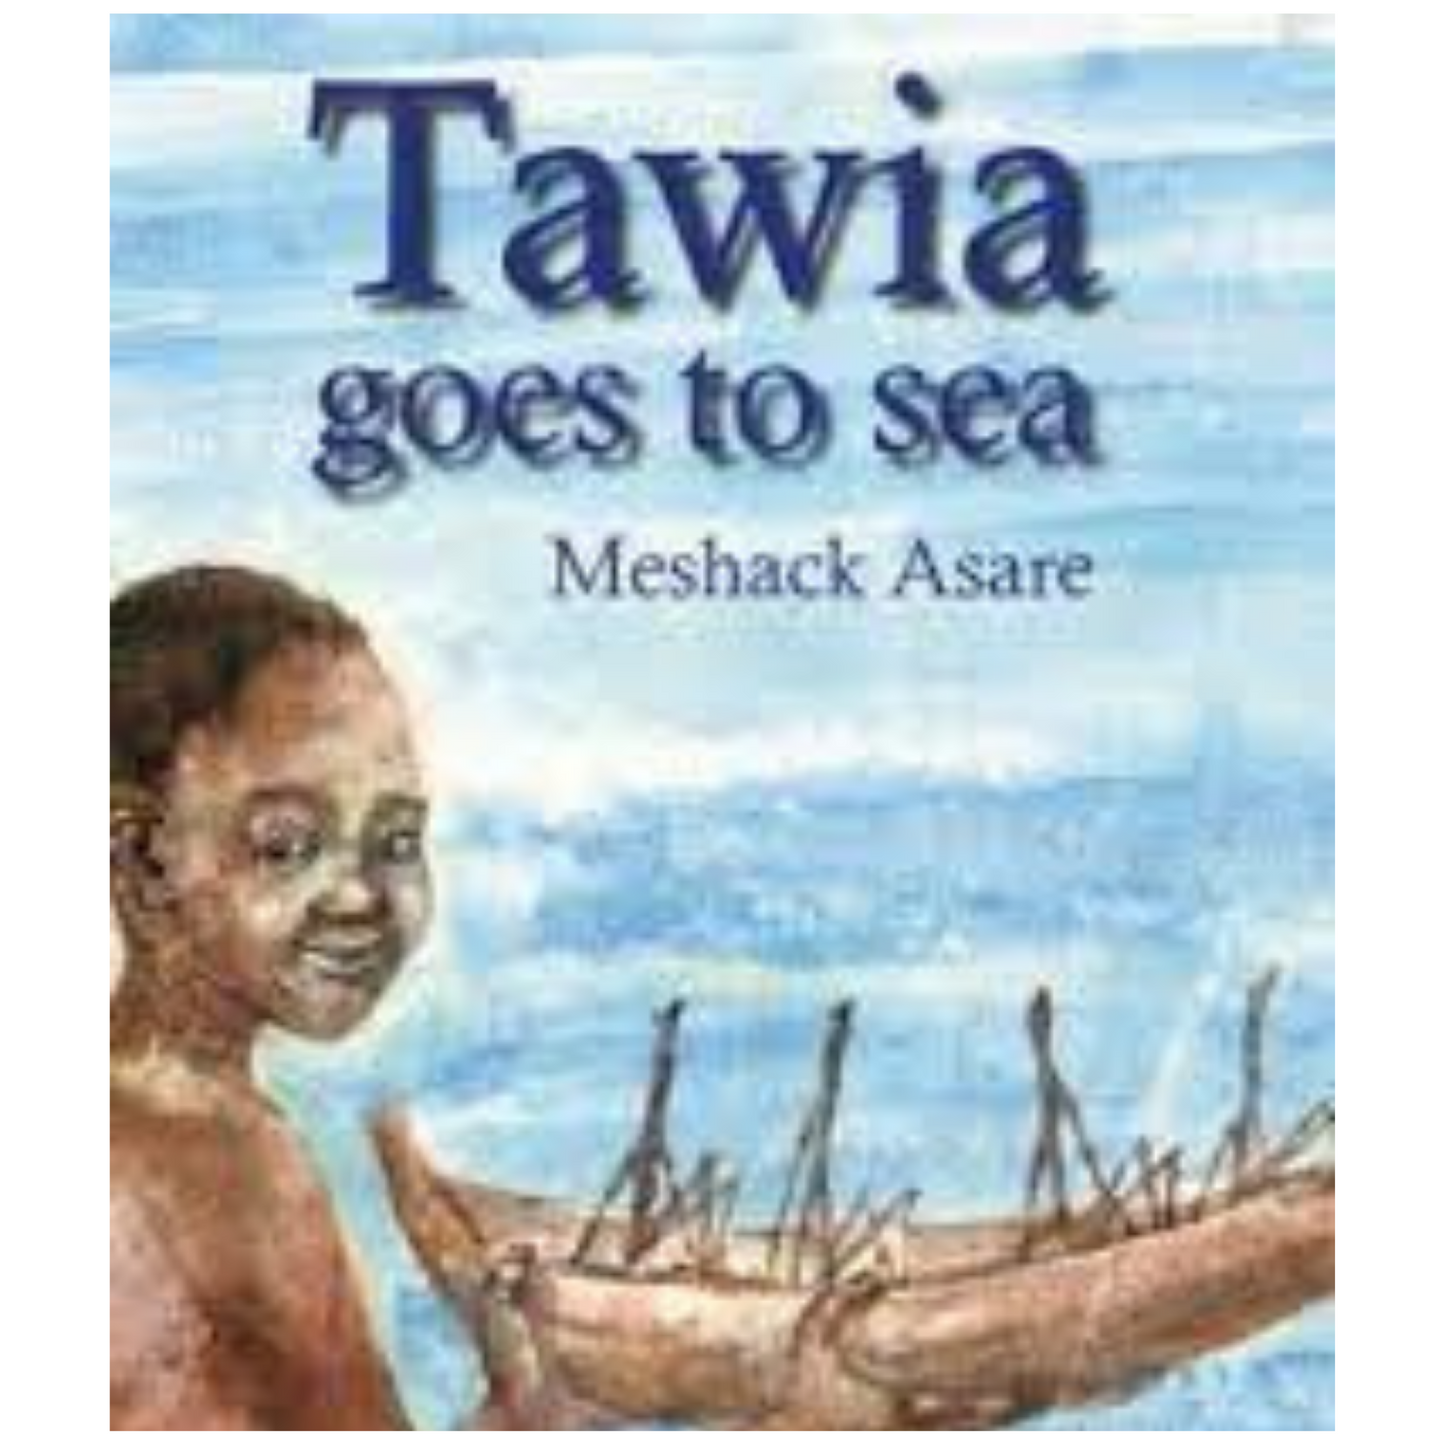 Tawia goes to sea